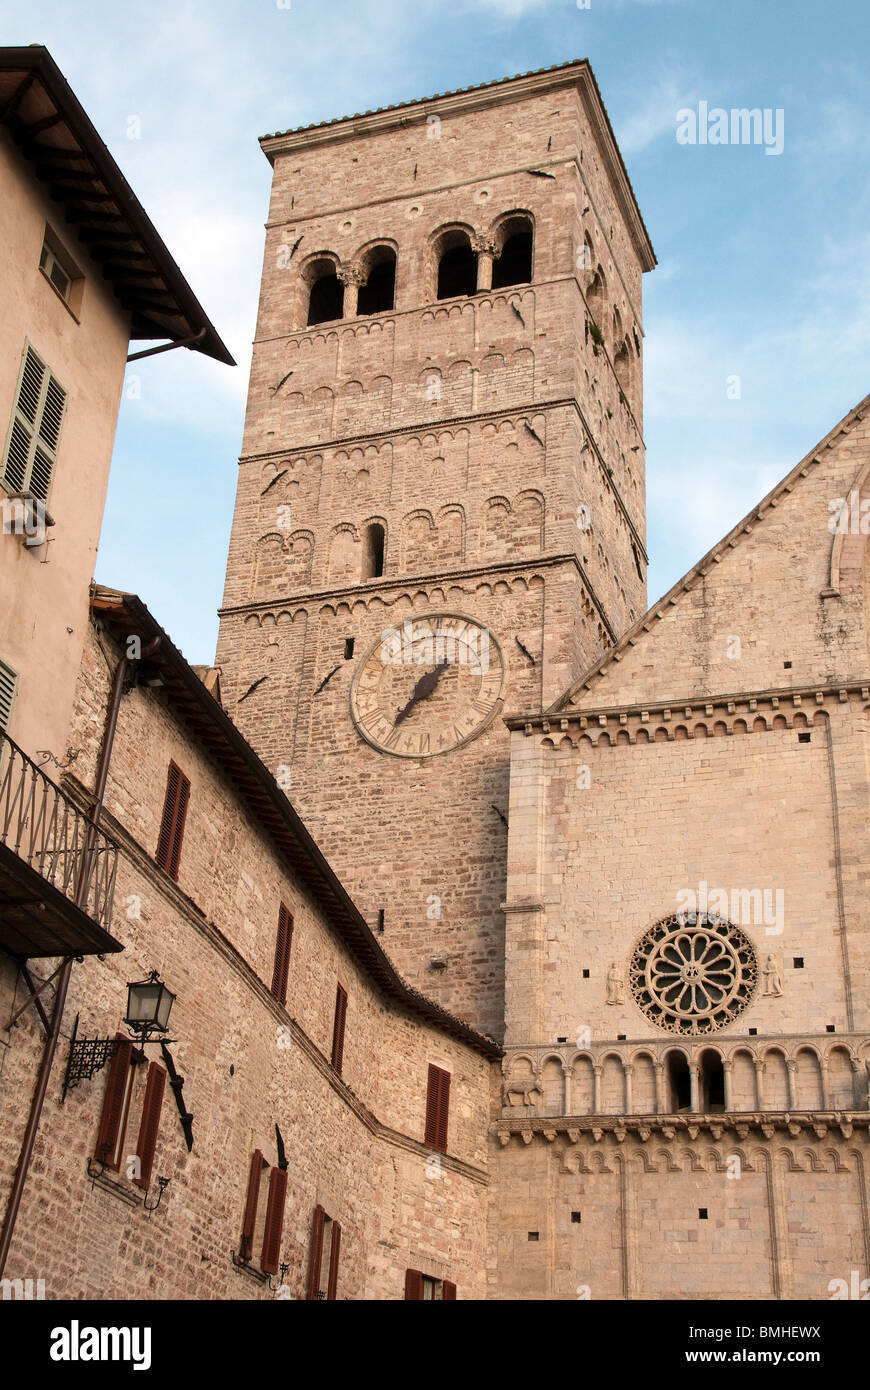 Assisi - La torre campanaria del Duomo di San Rufino mostra romanico classico le caratteristiche architettoniche Foto Stock